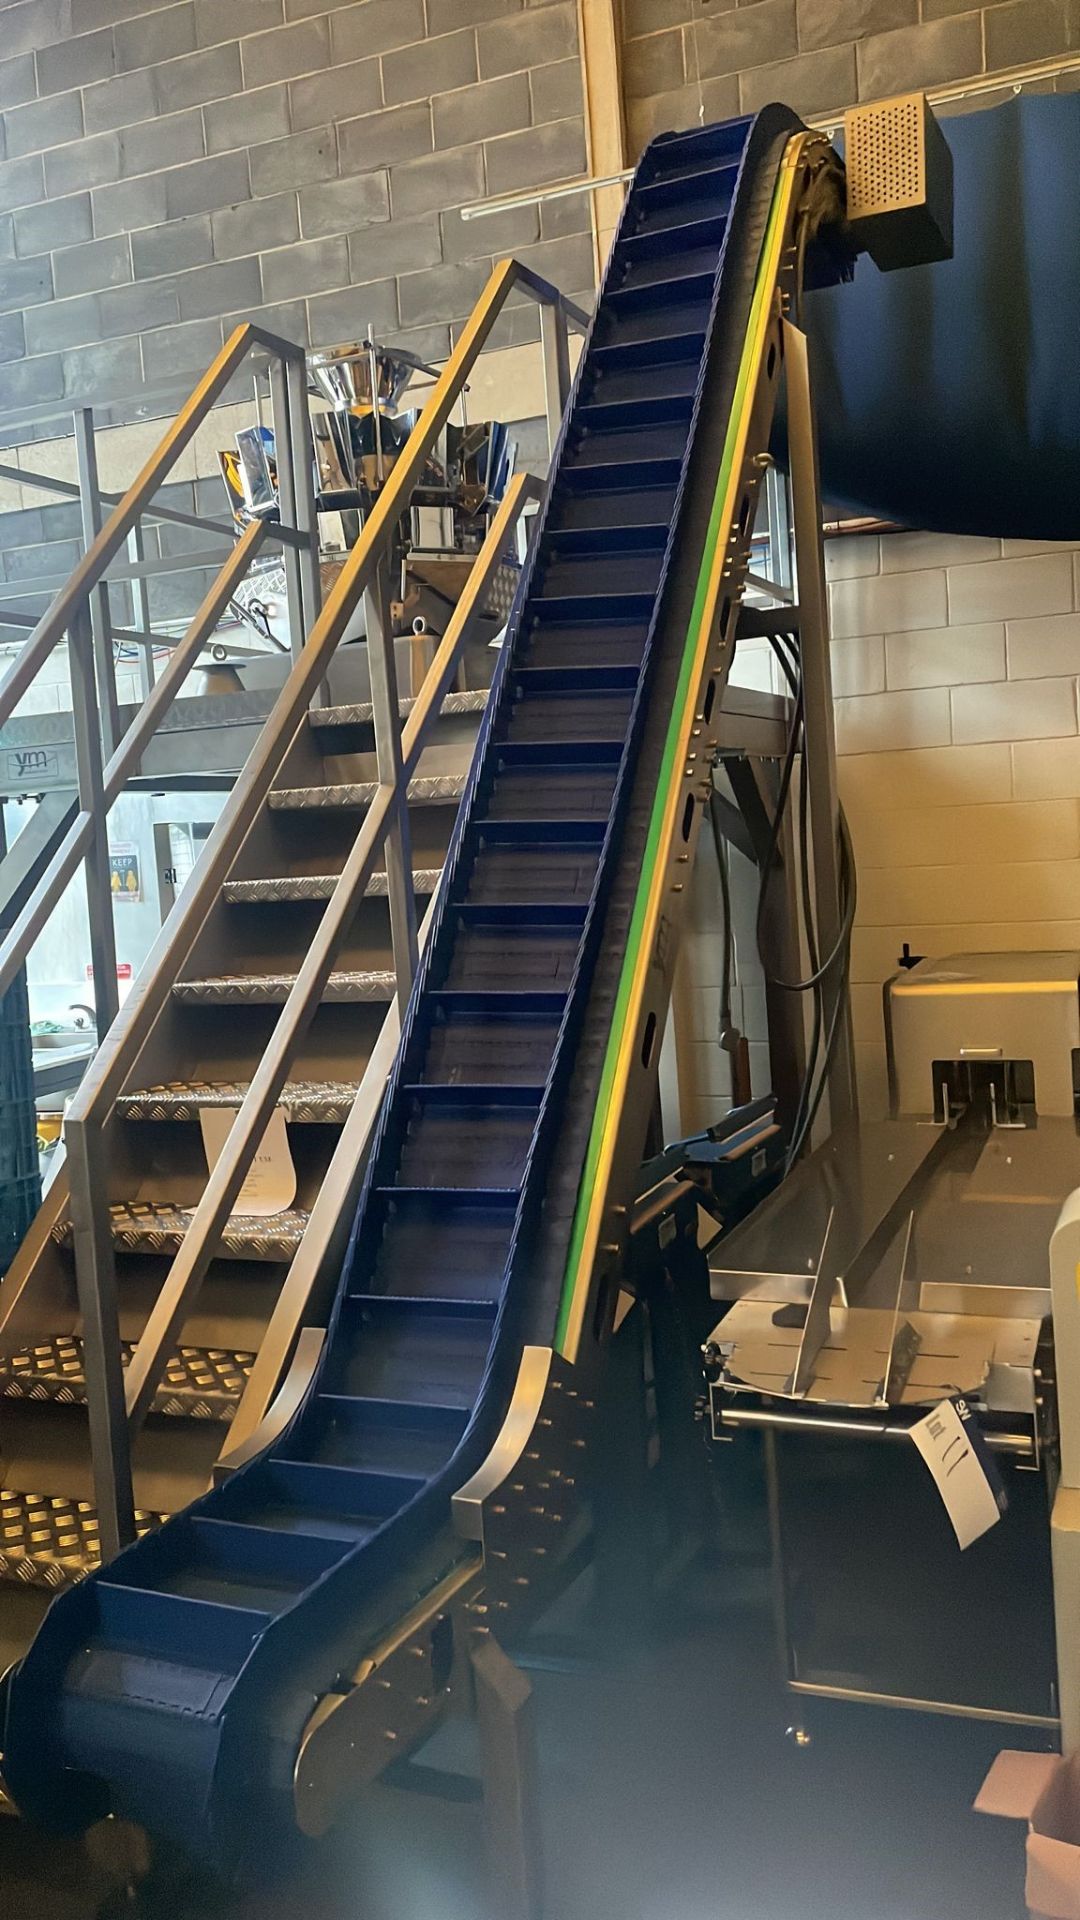 ELZ Stainless Steel Plastic Flighted Belt Elevator Conveyor, serial no. 50011013ELZ (please note –